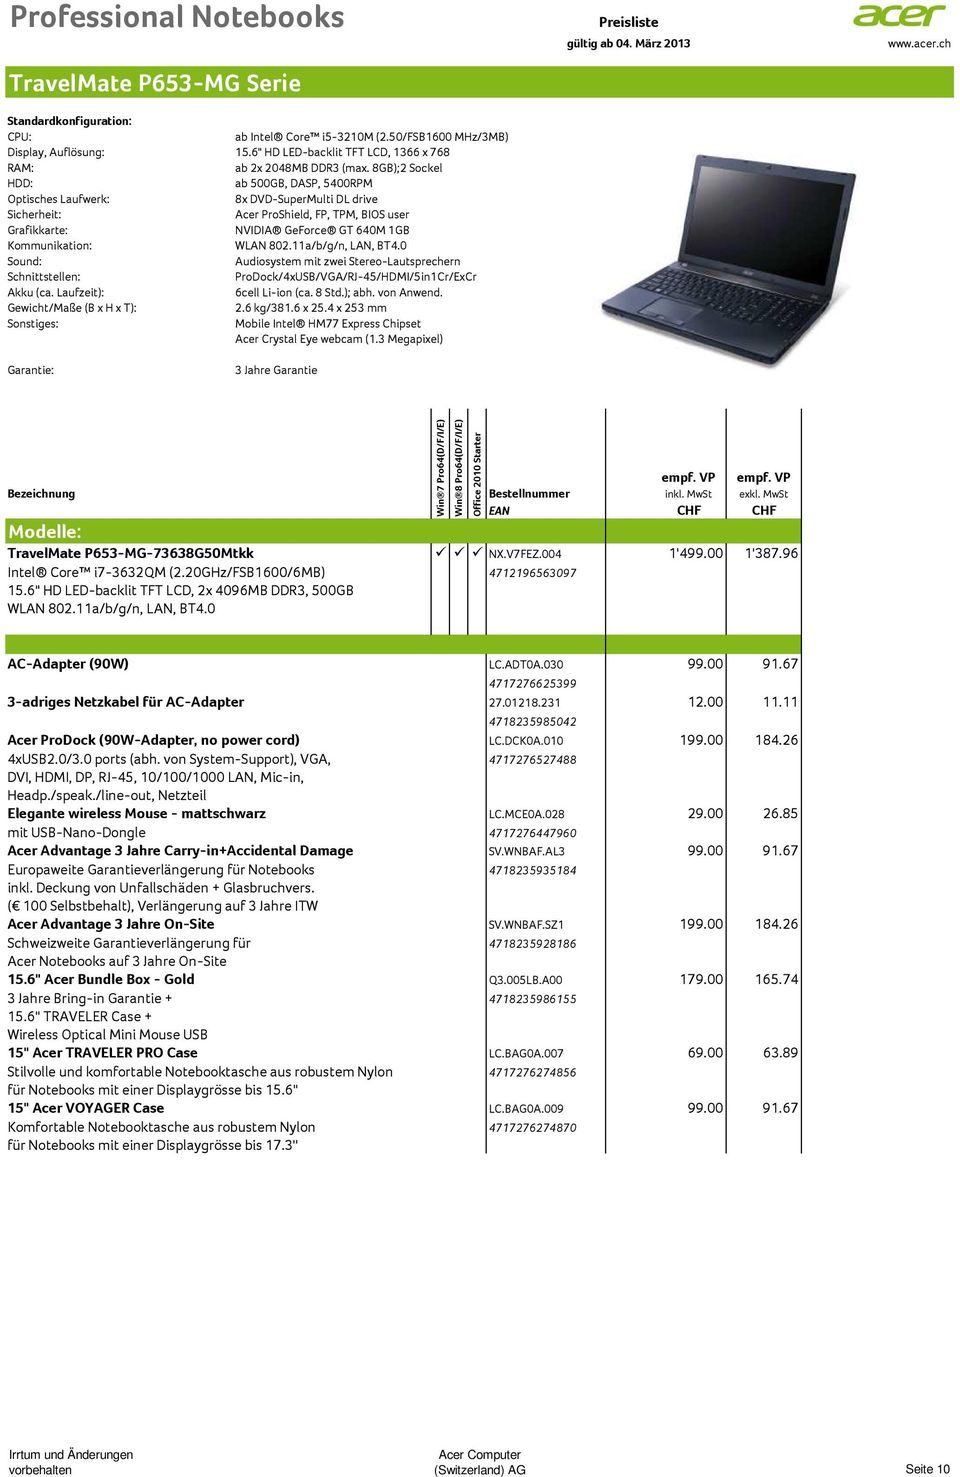 0 ProDock/4xUSB/VGA/RJ-45/HDMI/5in1Cr/ExCr 6cell Li-ion (ca. 8 Std.); abh. von Anwend. Gewicht/Maße (B x H x T): 2.6 kg/381.6 x 25.4 x 253 mm Acer Crystal Eye webcam (1.